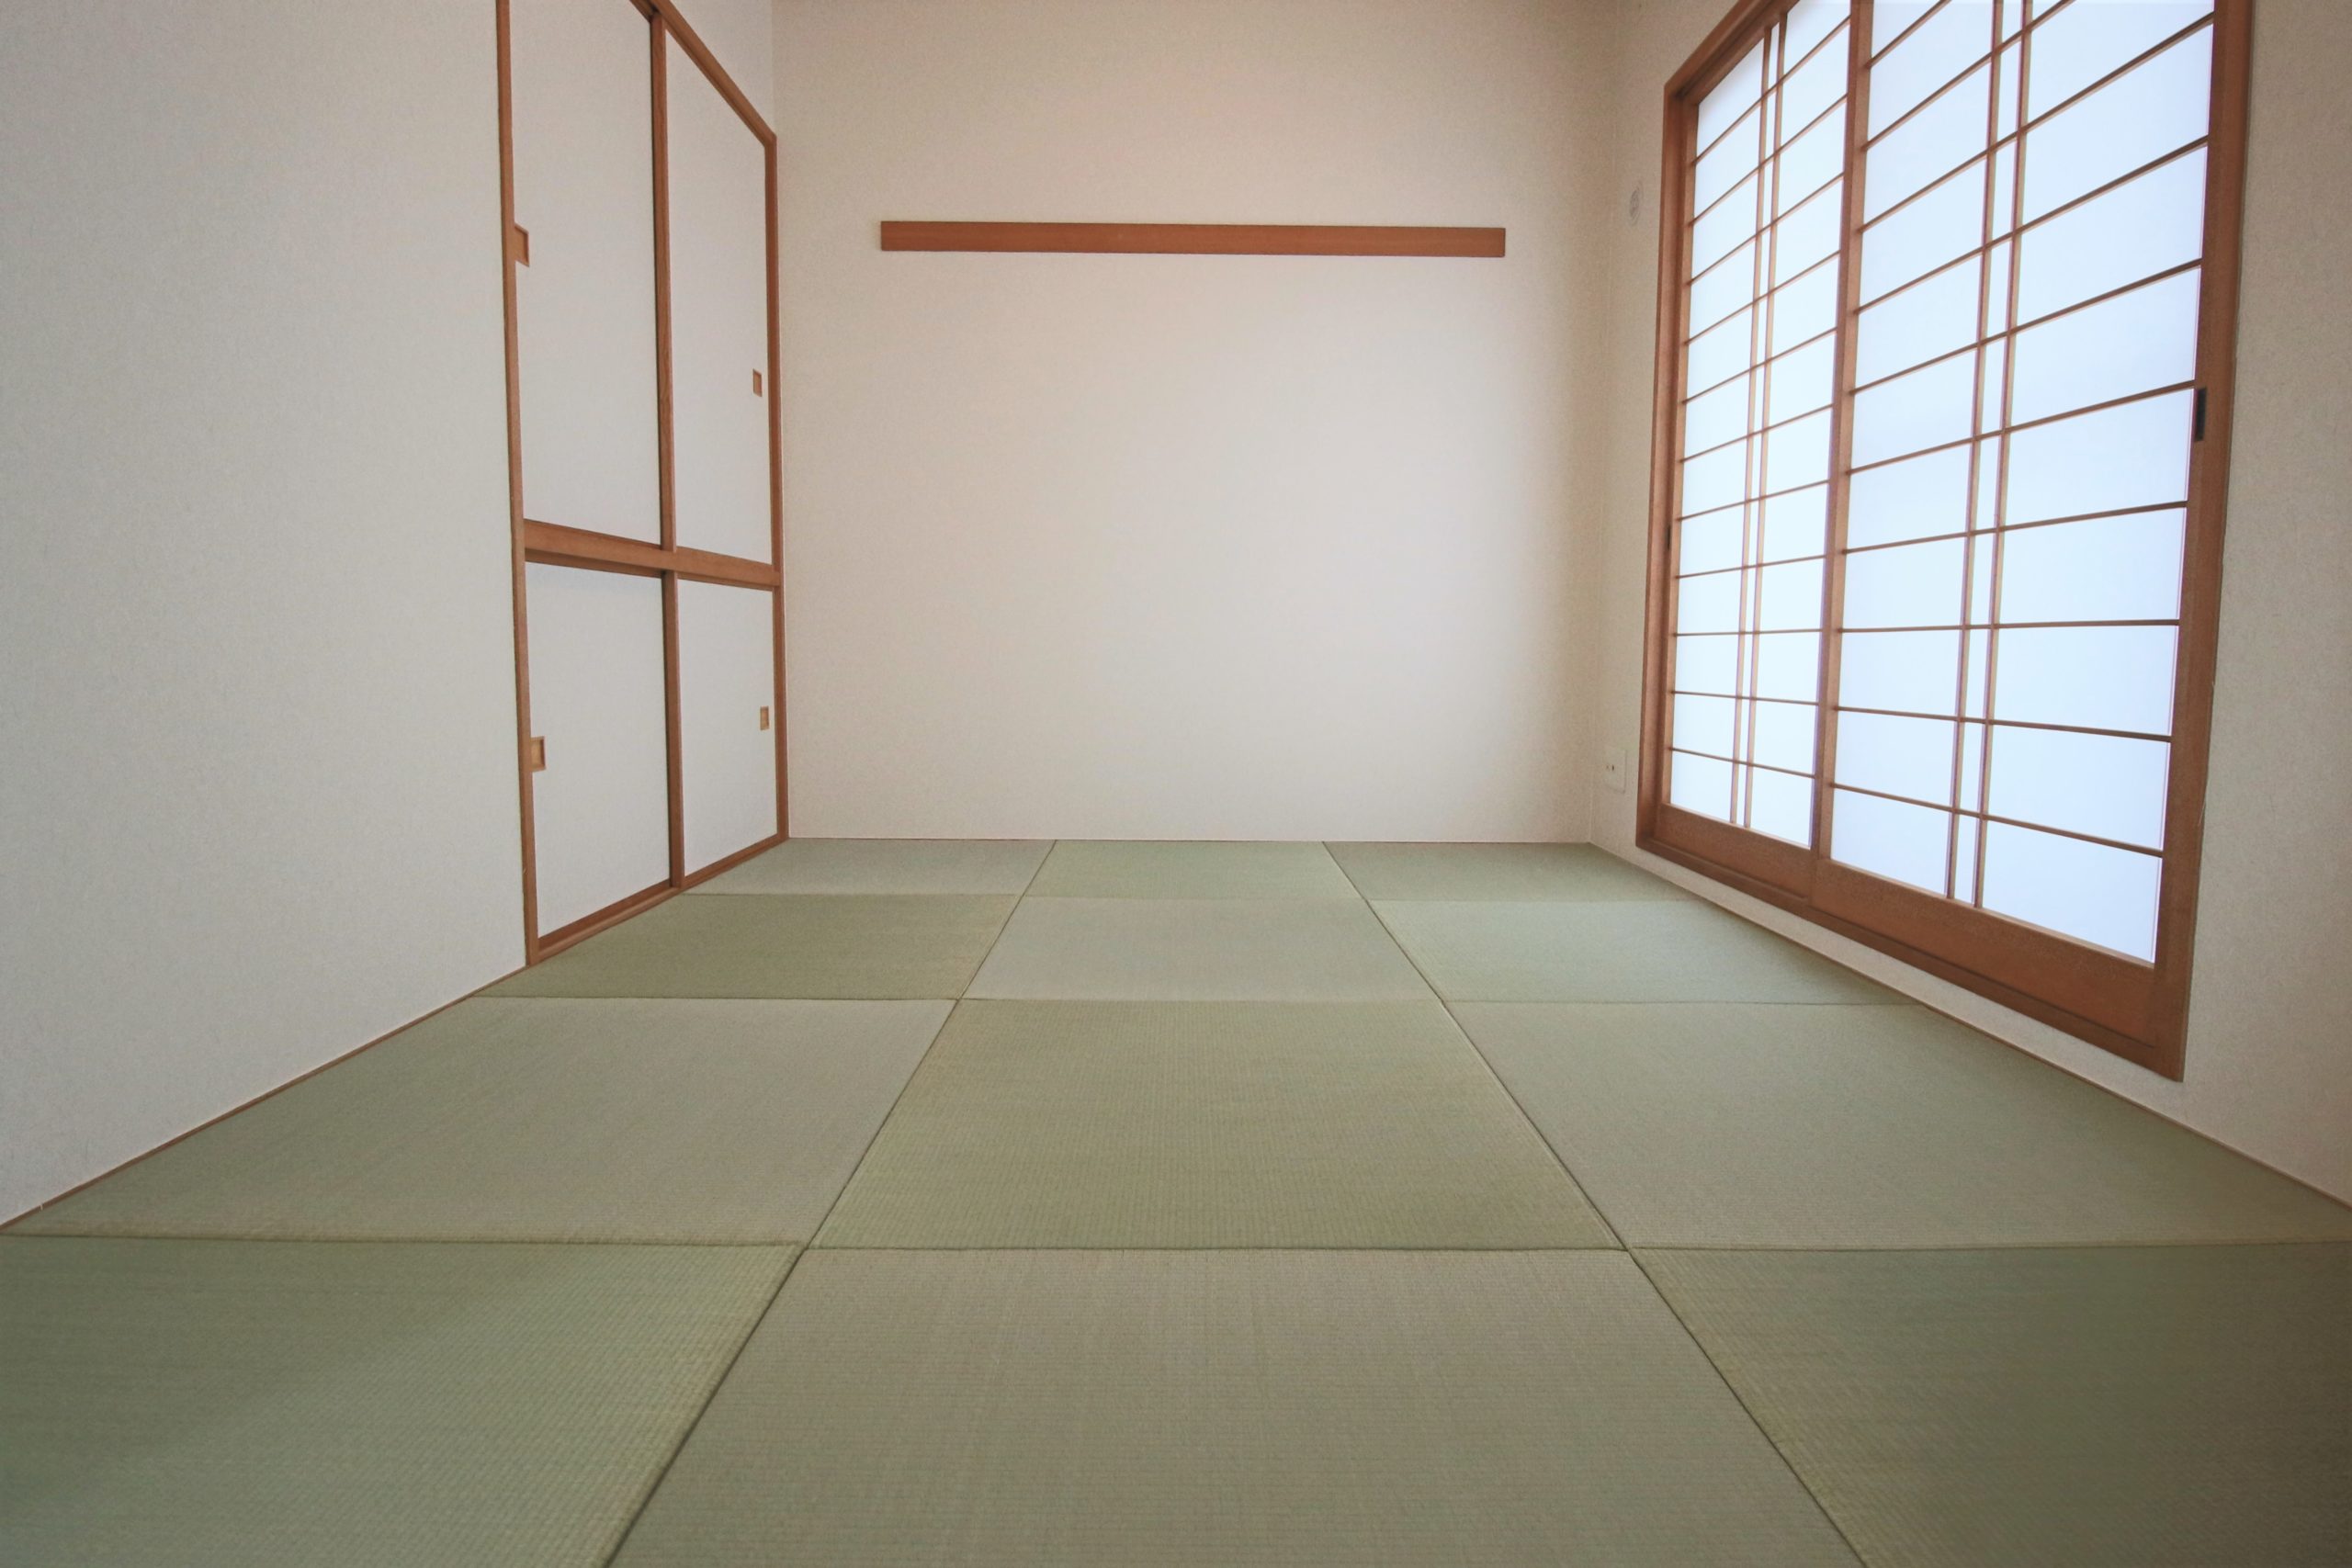 和室の写真、押入と内障子付き、畳は正方形のフチなしでスタイリッシュな印象